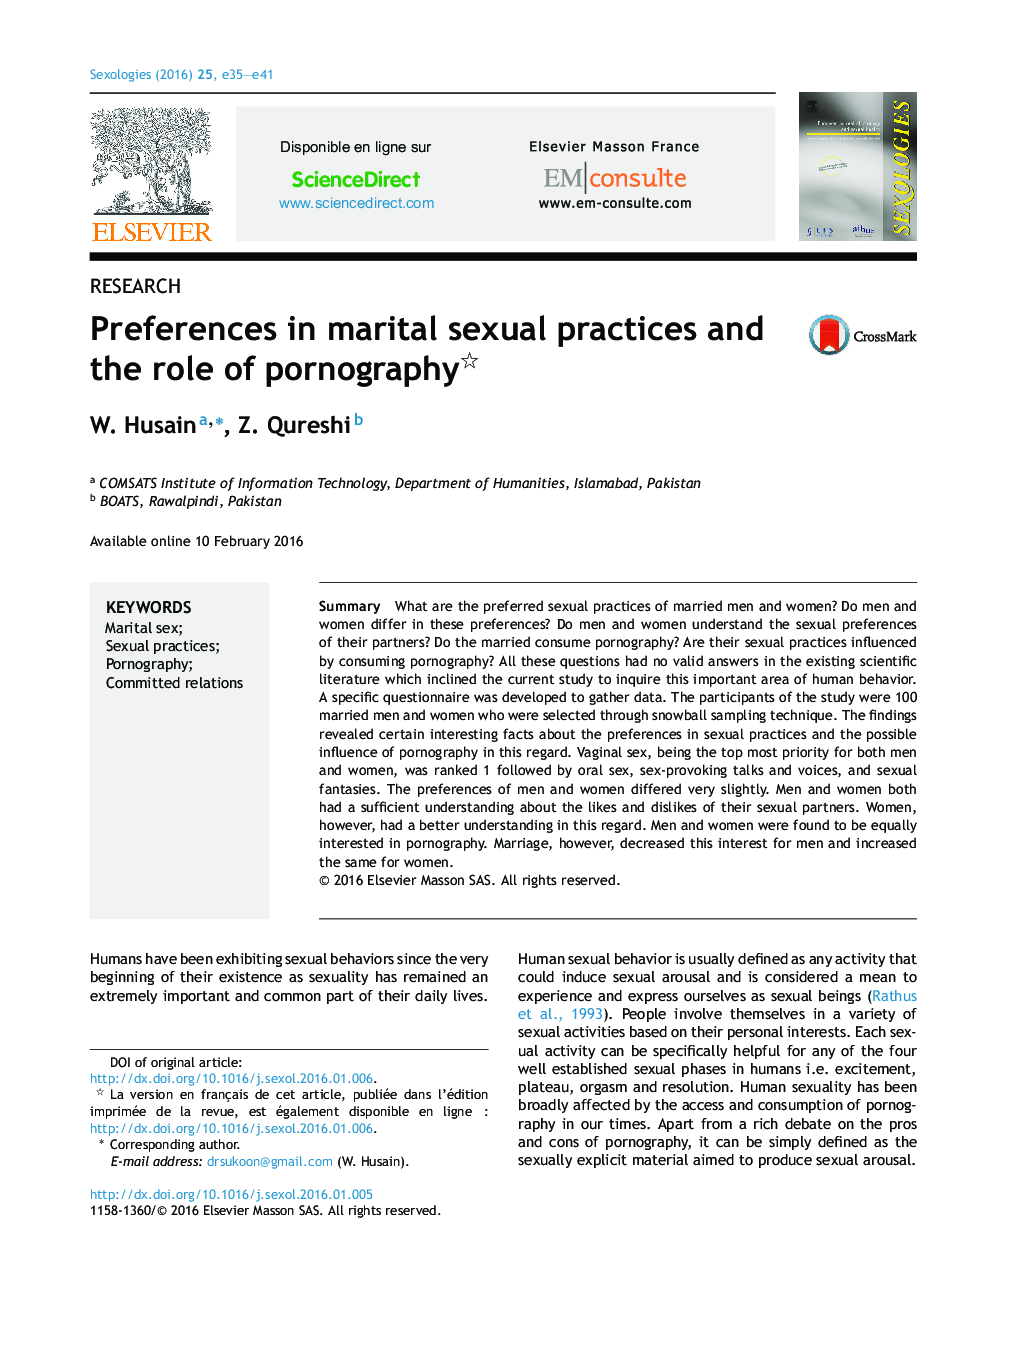 تنظیمات در کنش های جنسی زناشویی و نقش پورنوگرافی